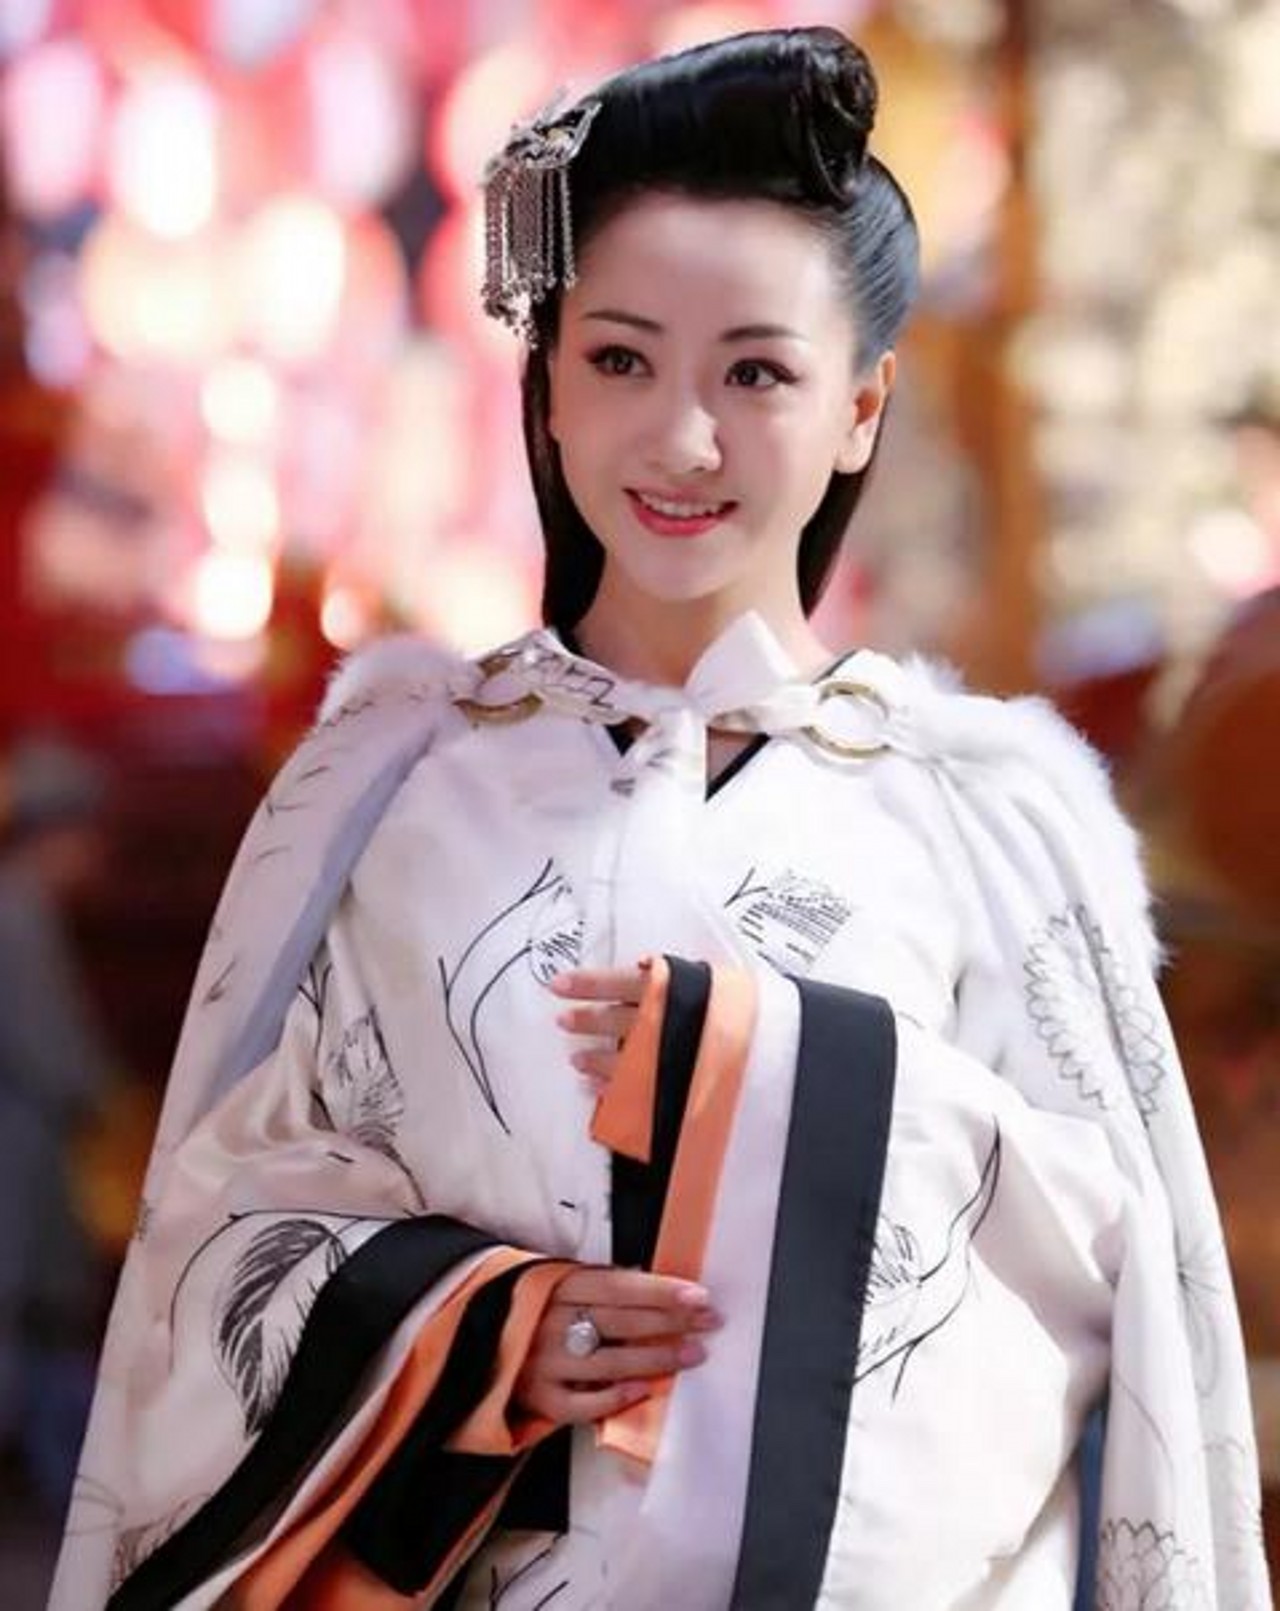 第三名杨蓉,杨蓉的这身白衣古装十分抢眼,发型也很优雅,搭配白色的